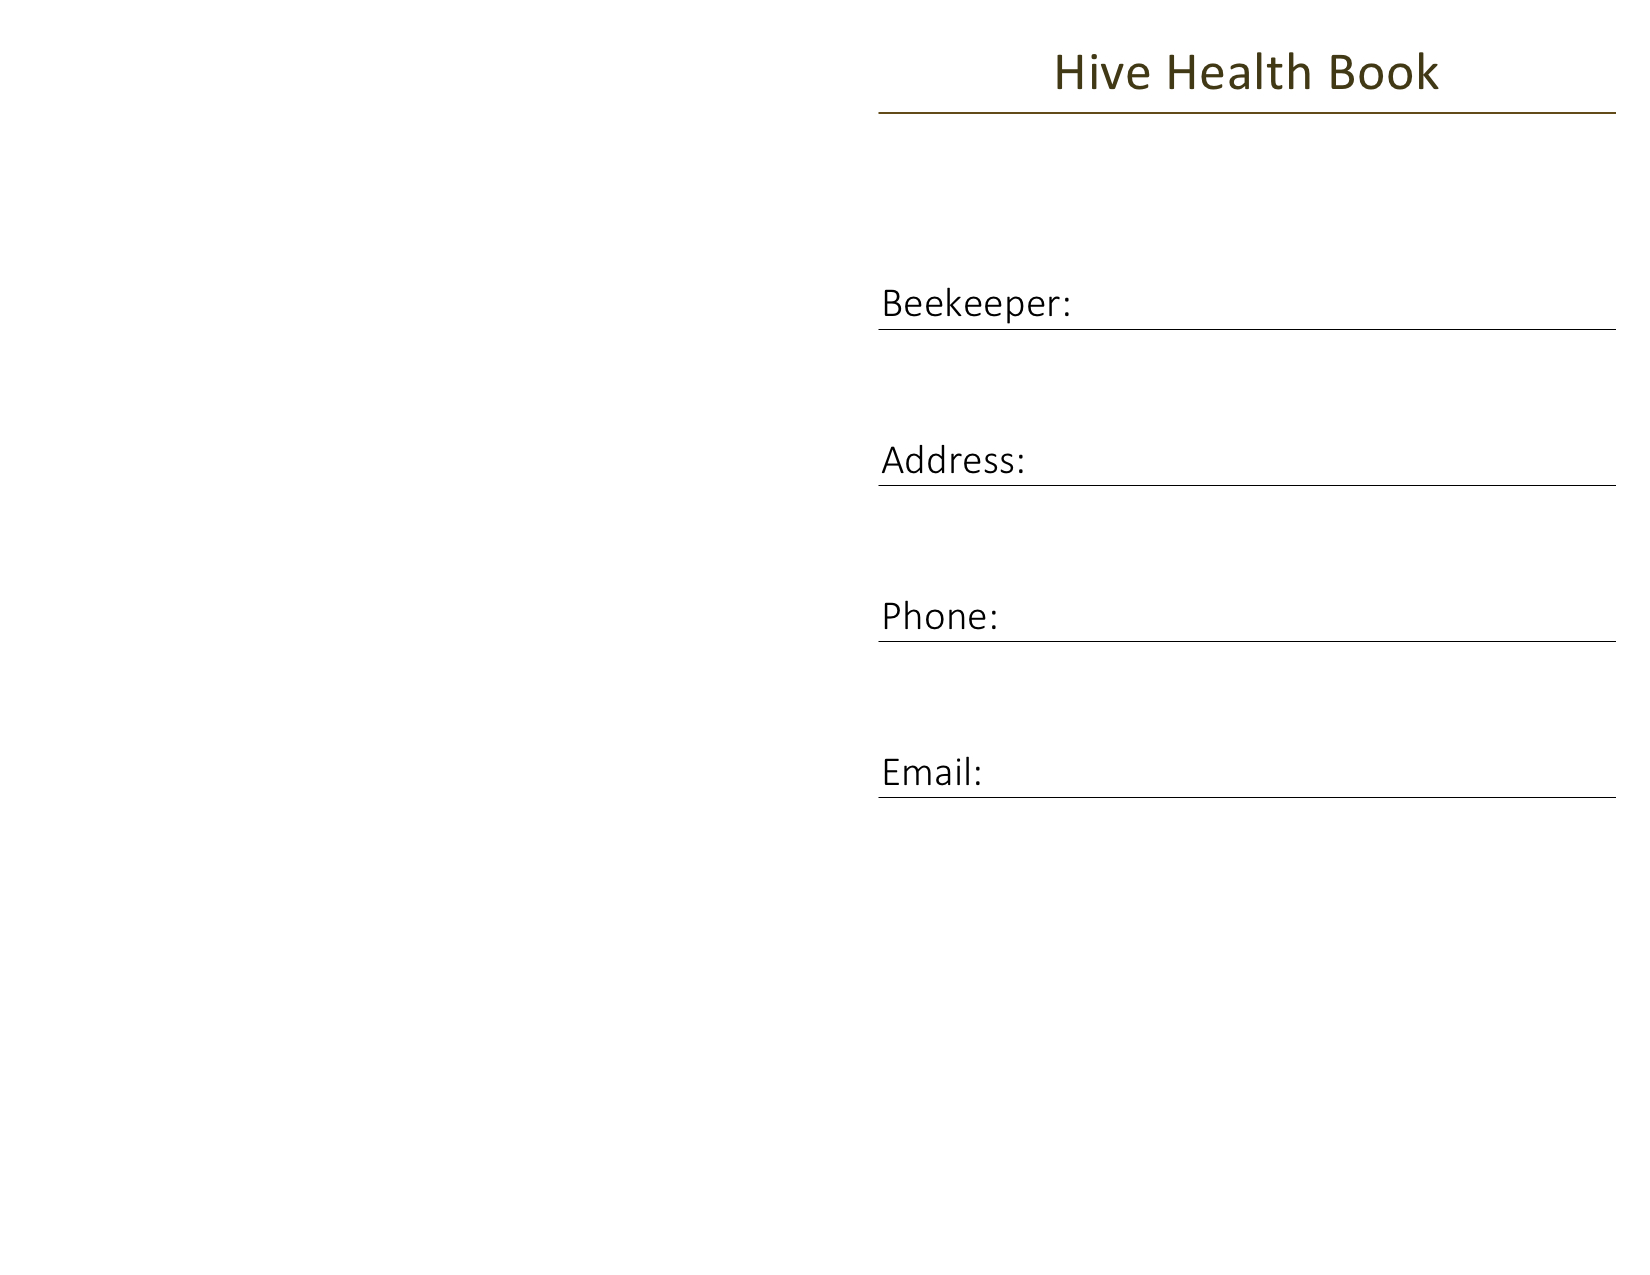 Texto lee Hive Health Book y tiene espacios abajo para llenar apicultor, dirección, teléfono, correo electrónico